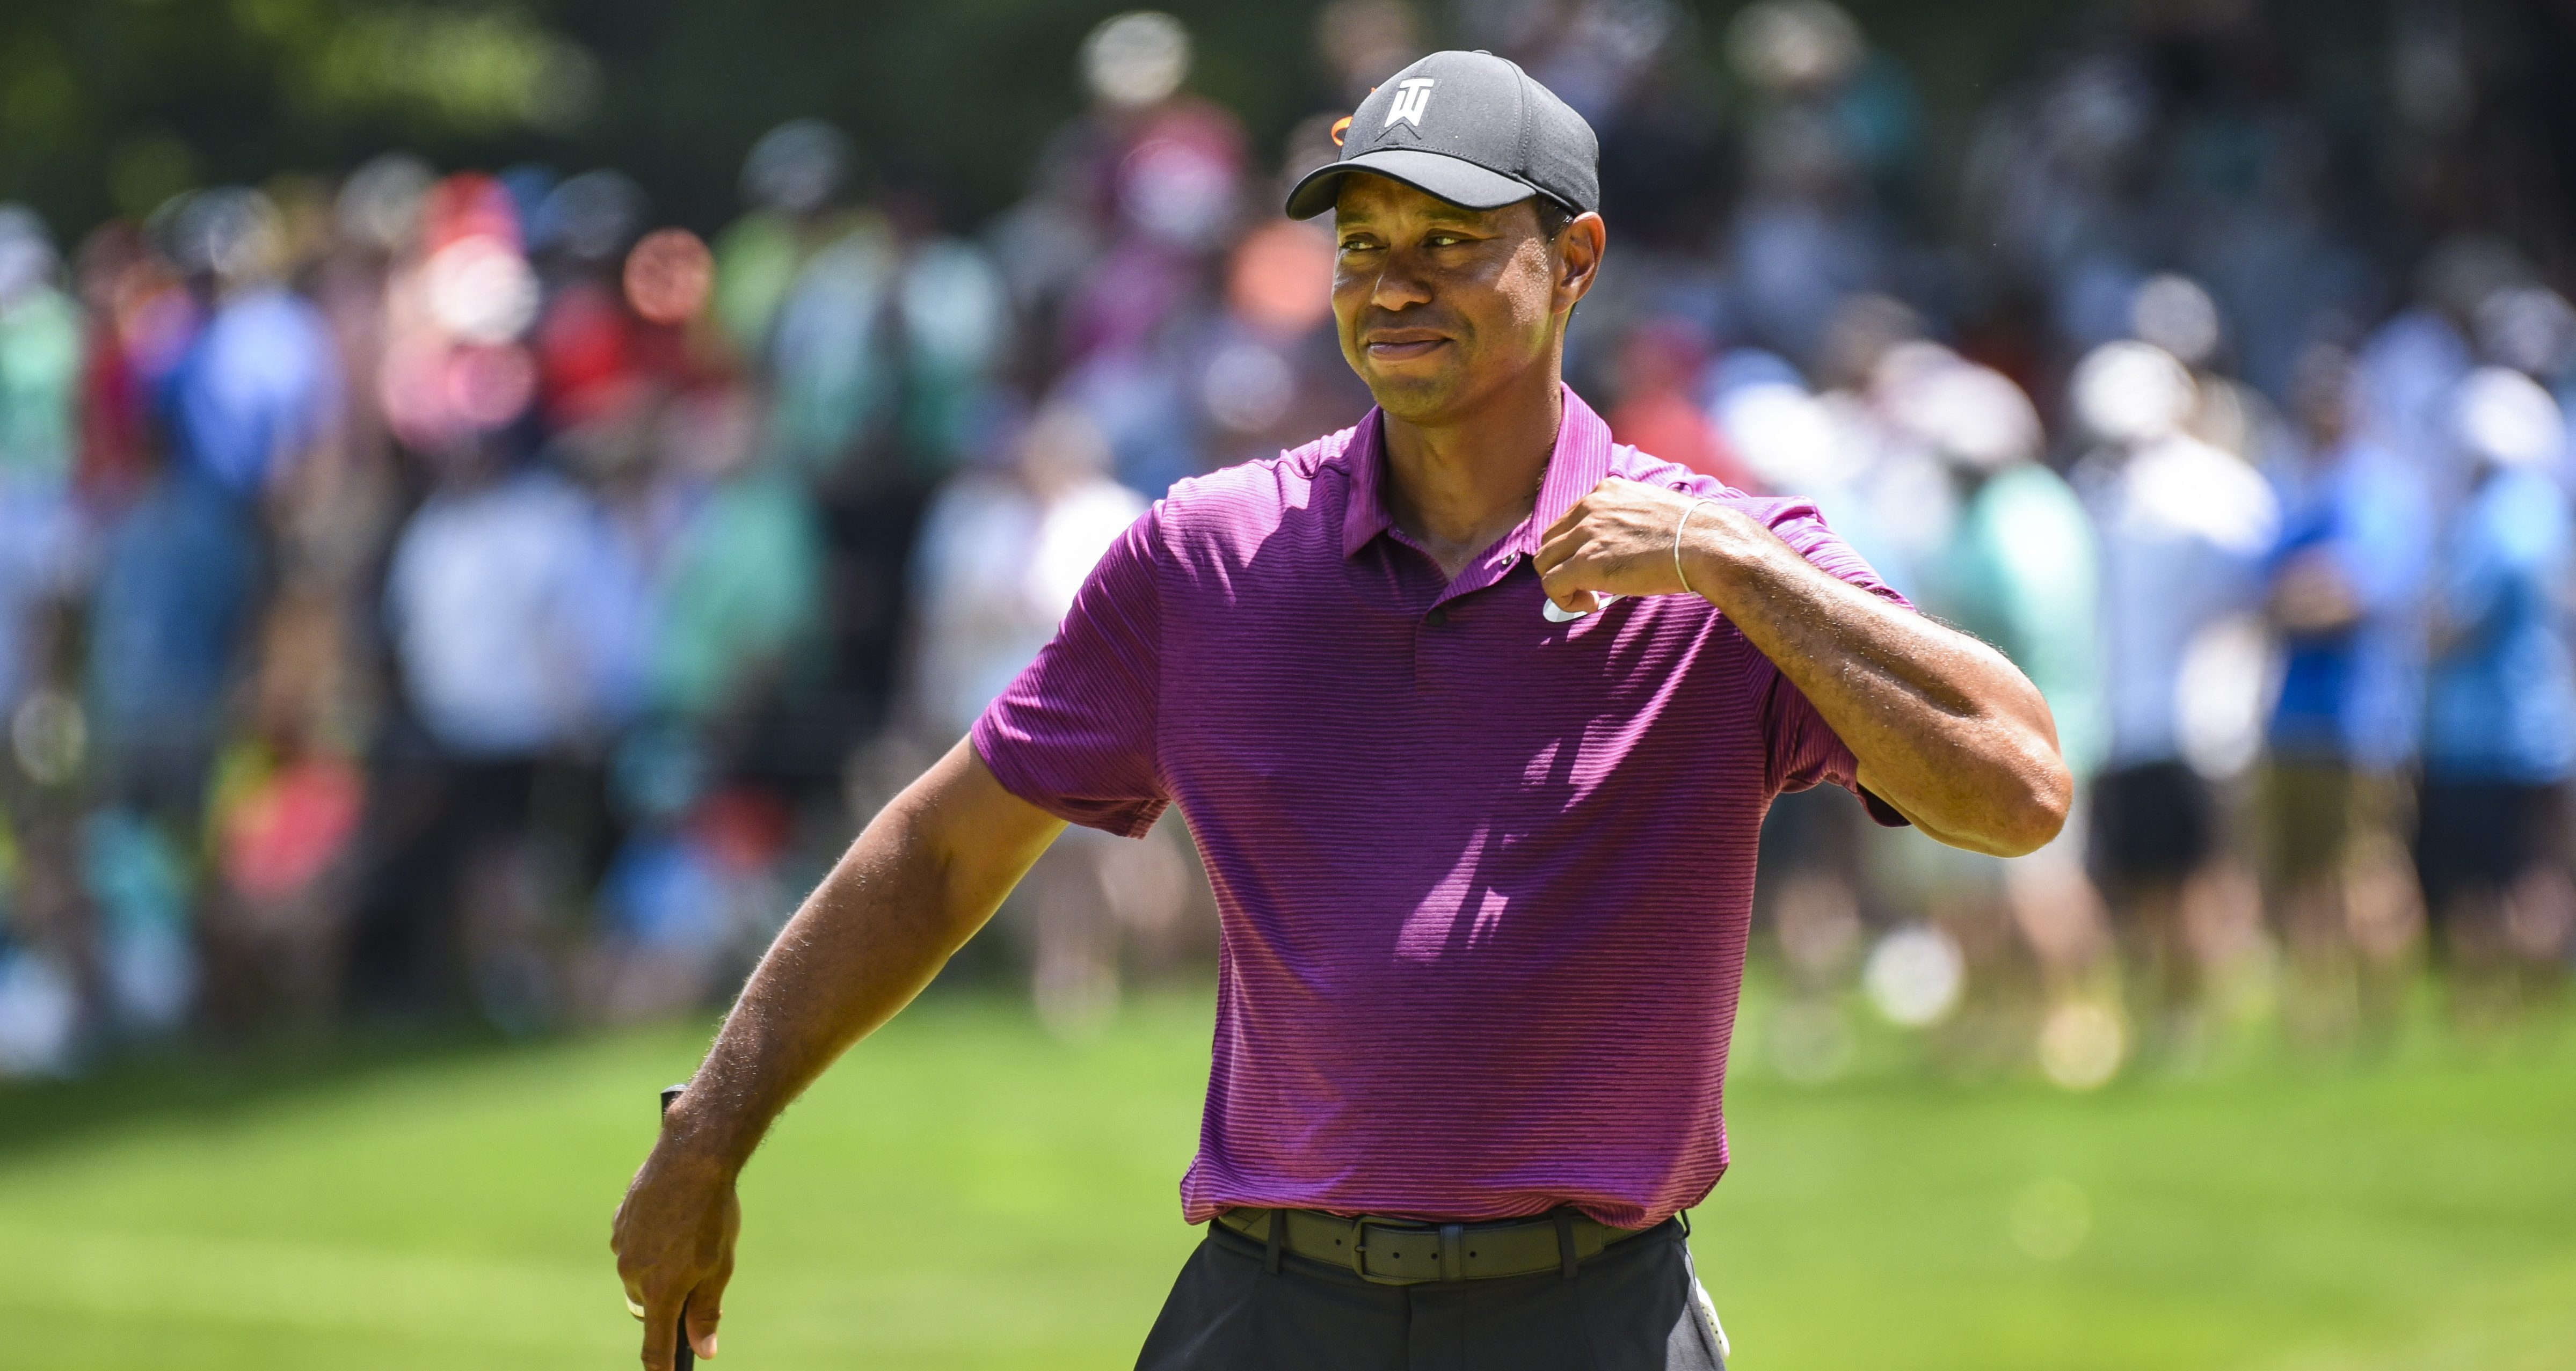 Quicken Loans National ngày thứ 2: Tiger Woods gây ấn tượng mạnh trong ngày 3 golfer cùng dẫn đầu